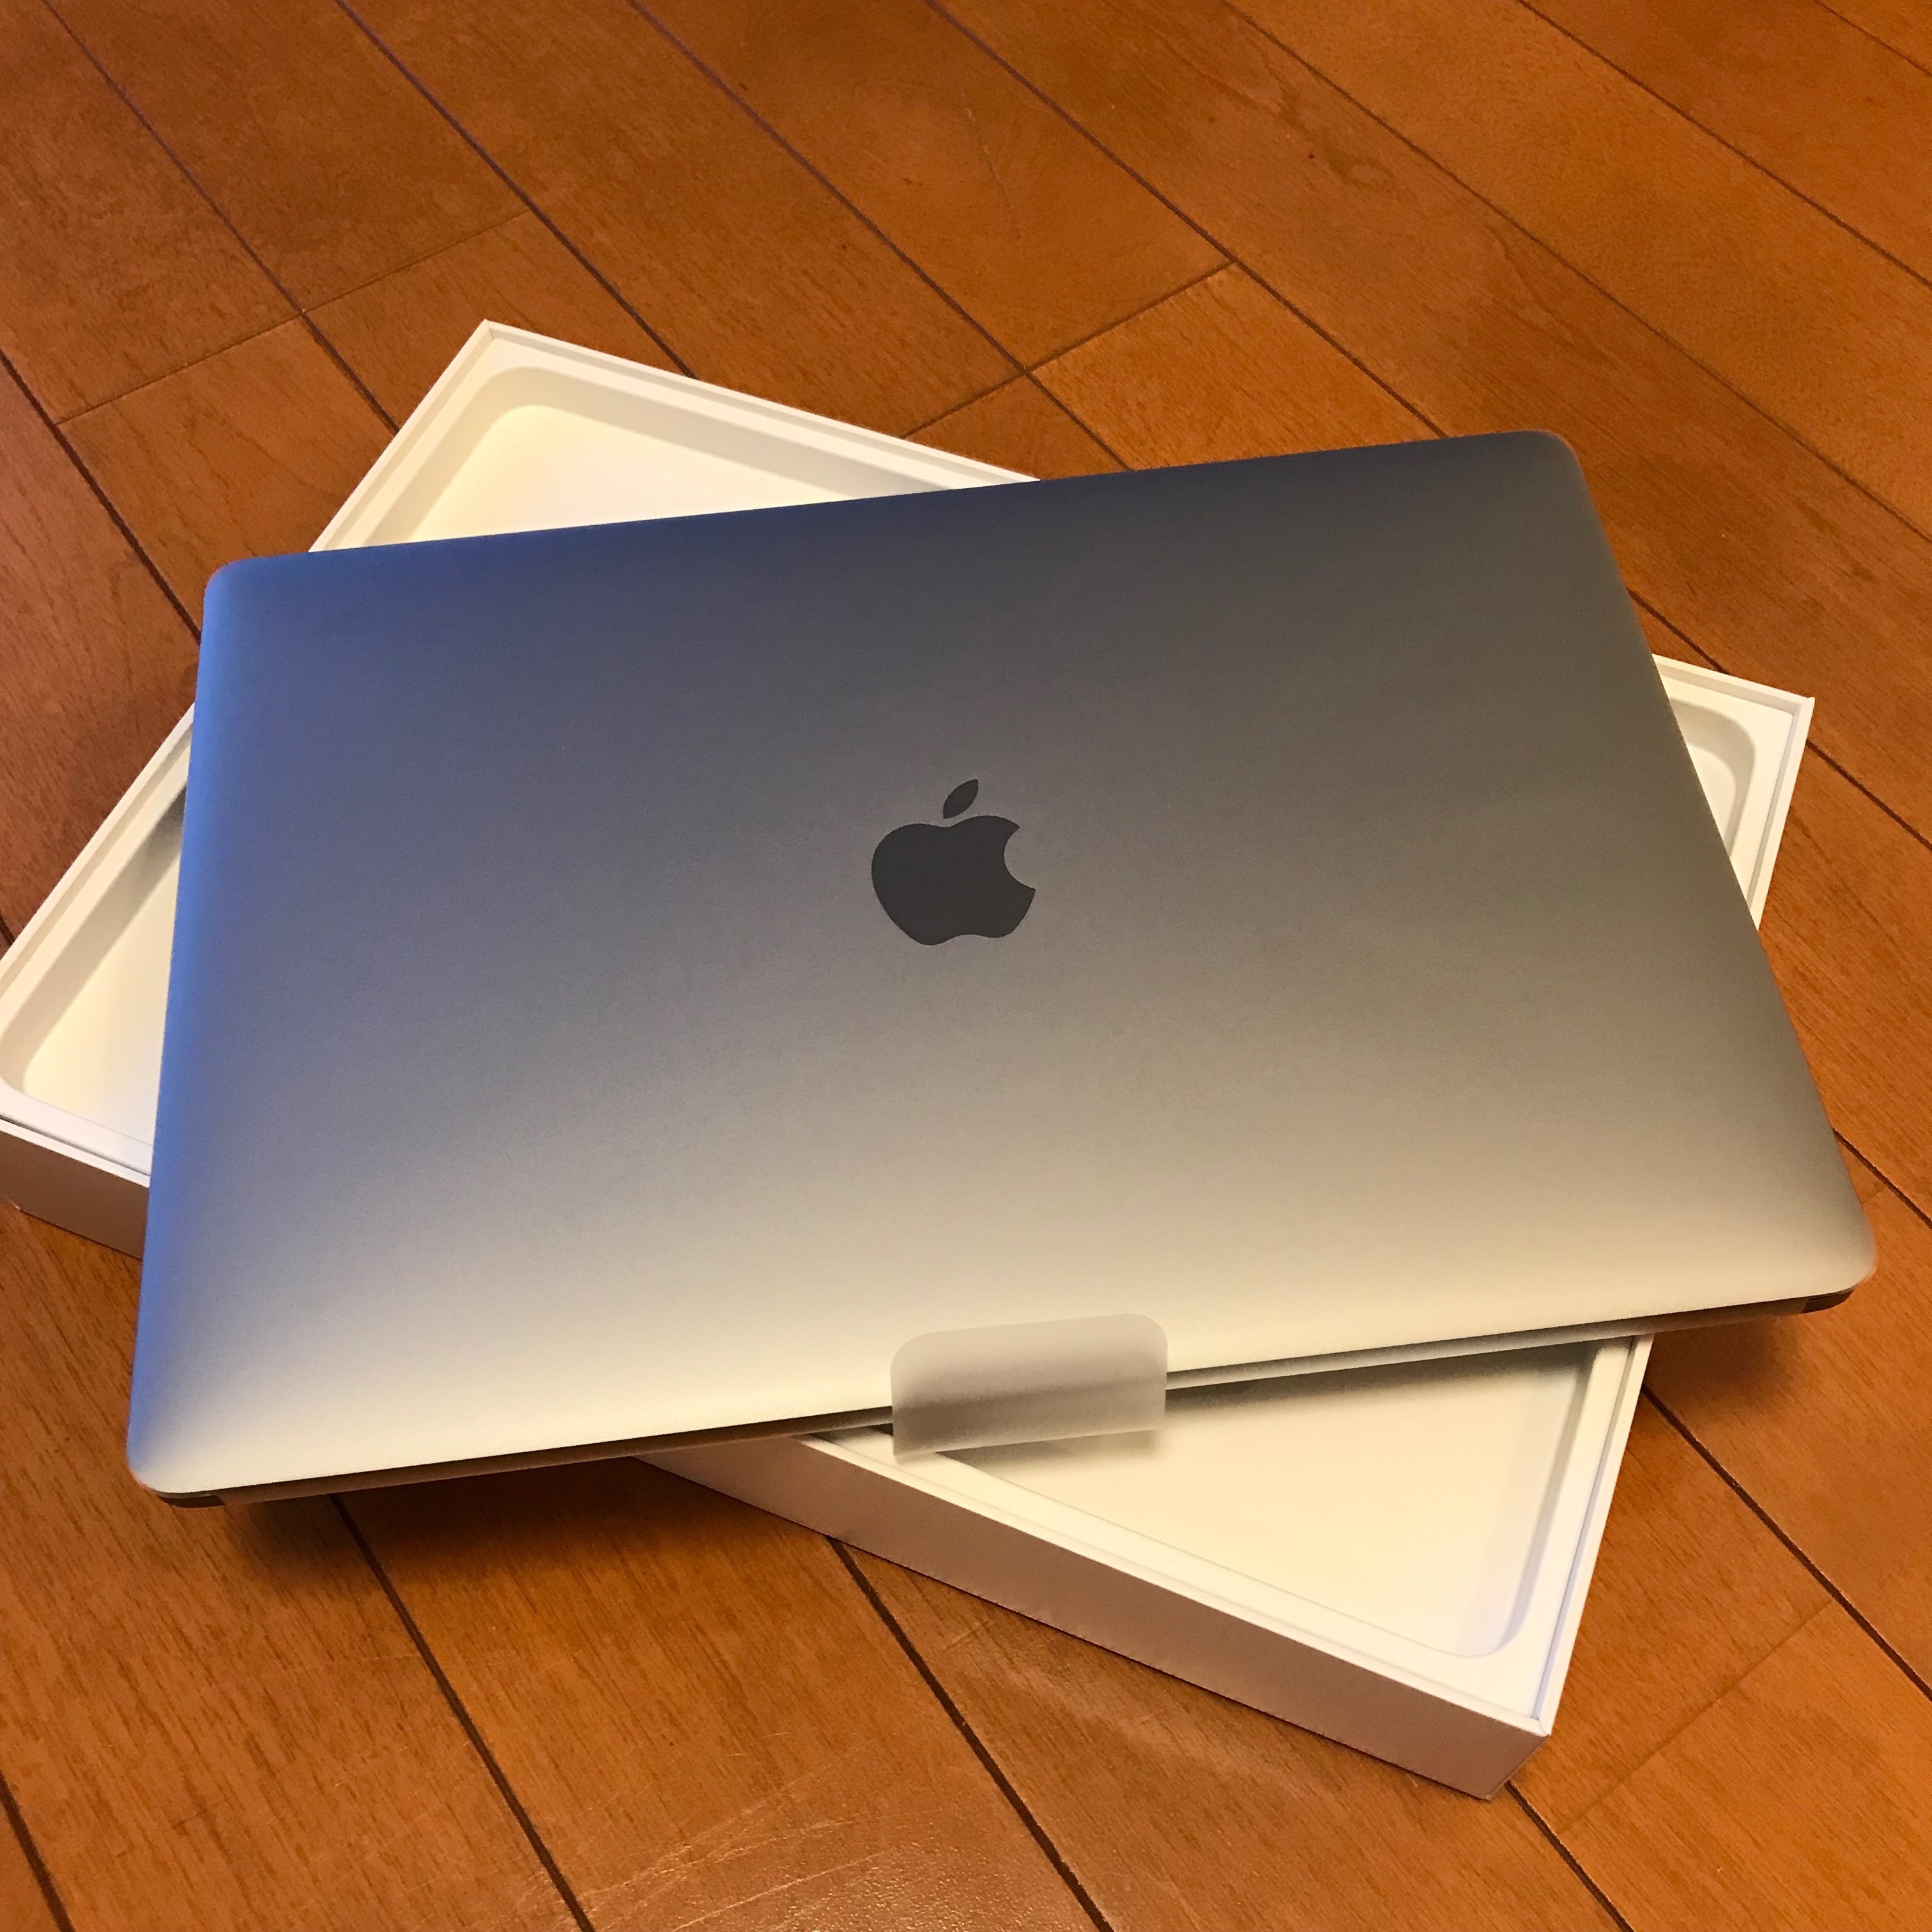 「モノが好き」2 - MacBook Pro 2018 ファーストインプレ 1